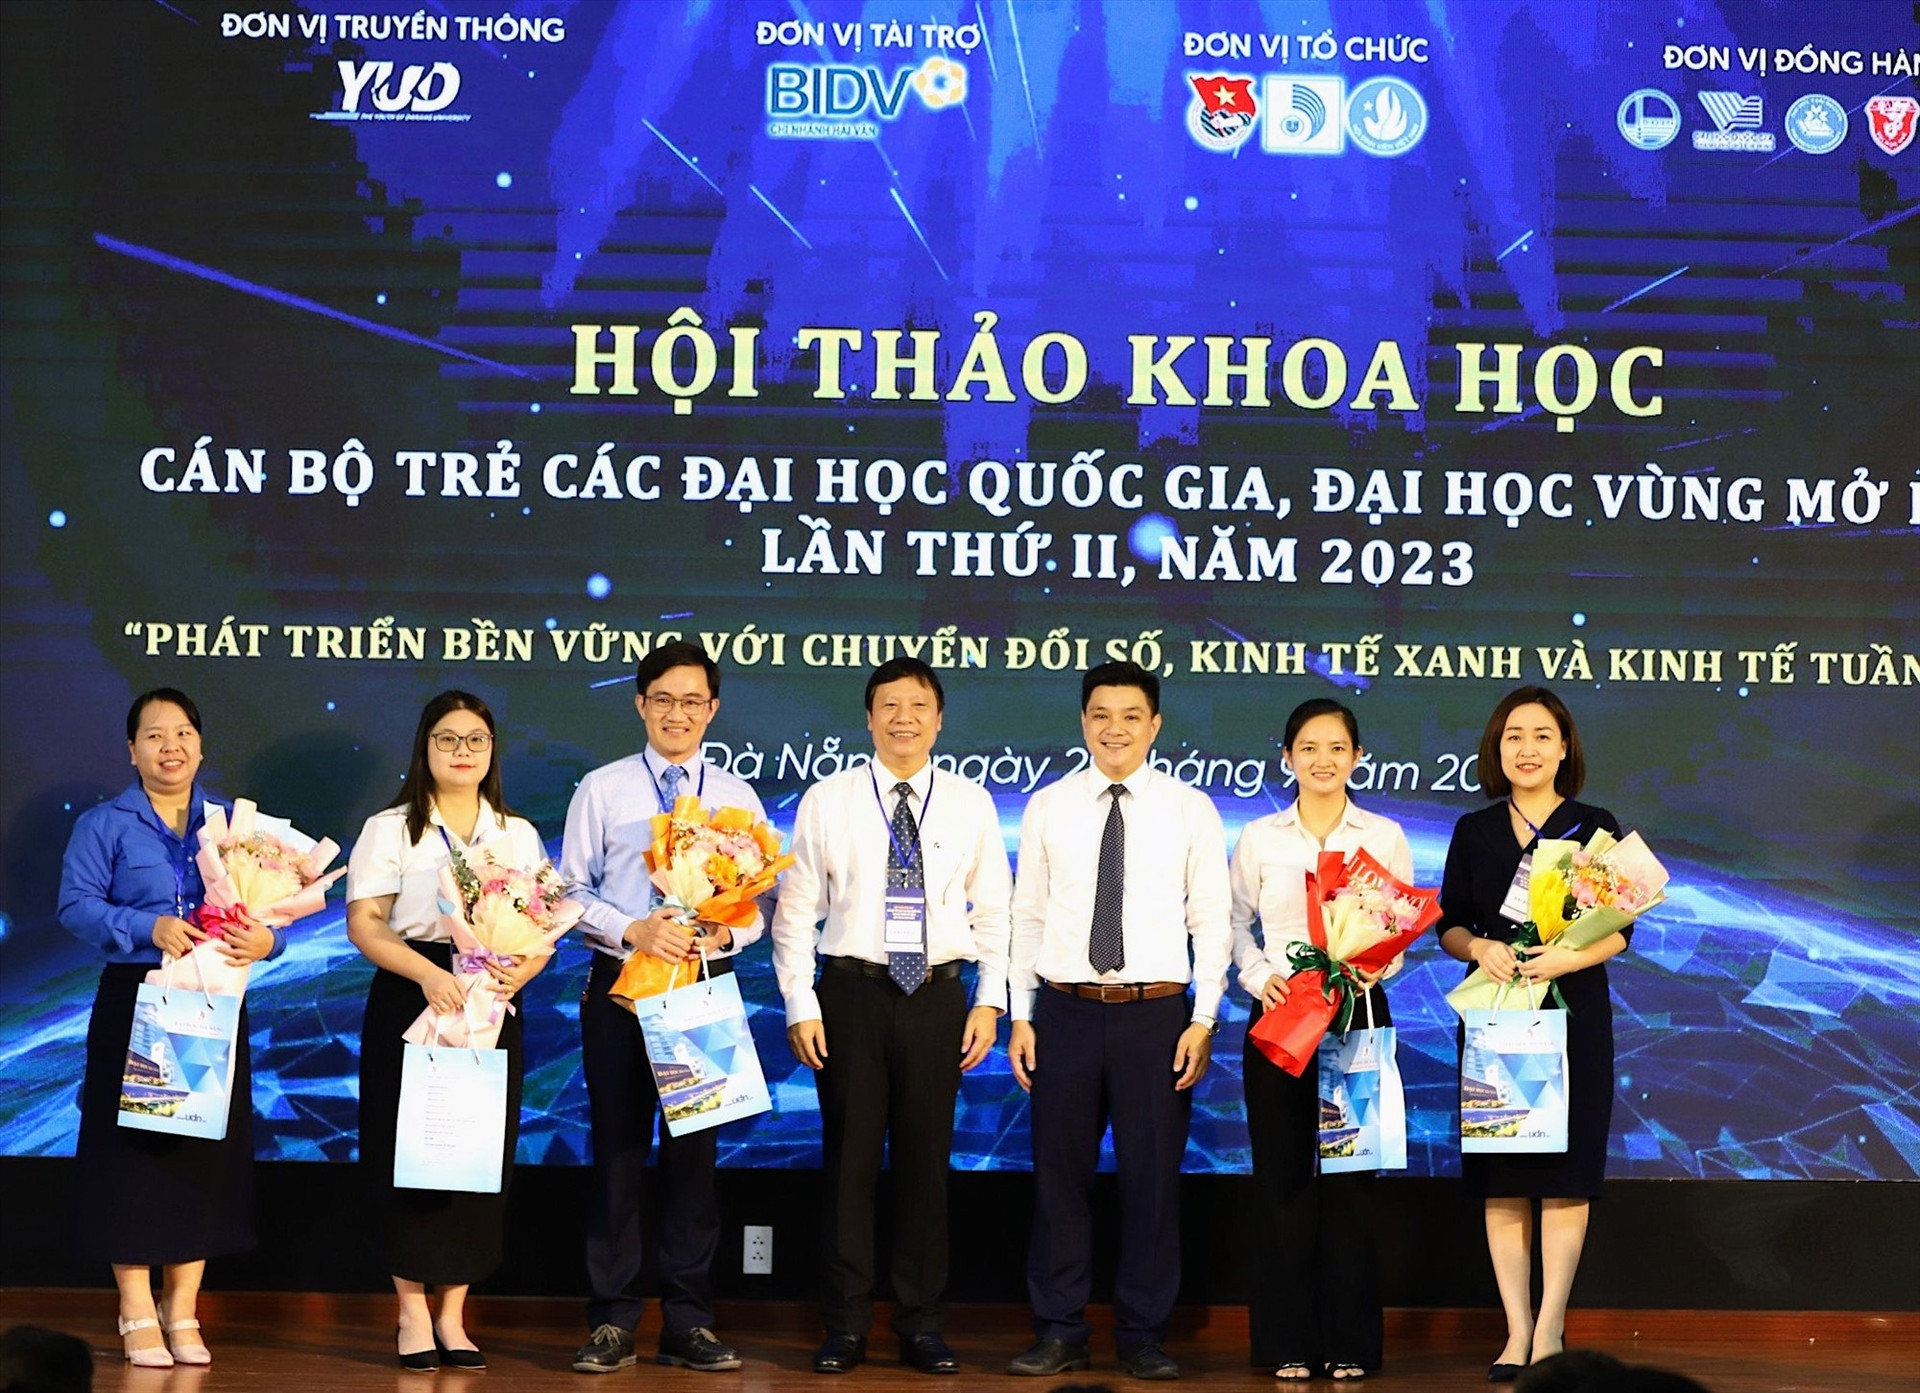 Lãnh đạo ĐHĐN tặng hoa các diễn giả và các đơn vị đồng hành tổ chức Hội thảo. Ảnh NTB